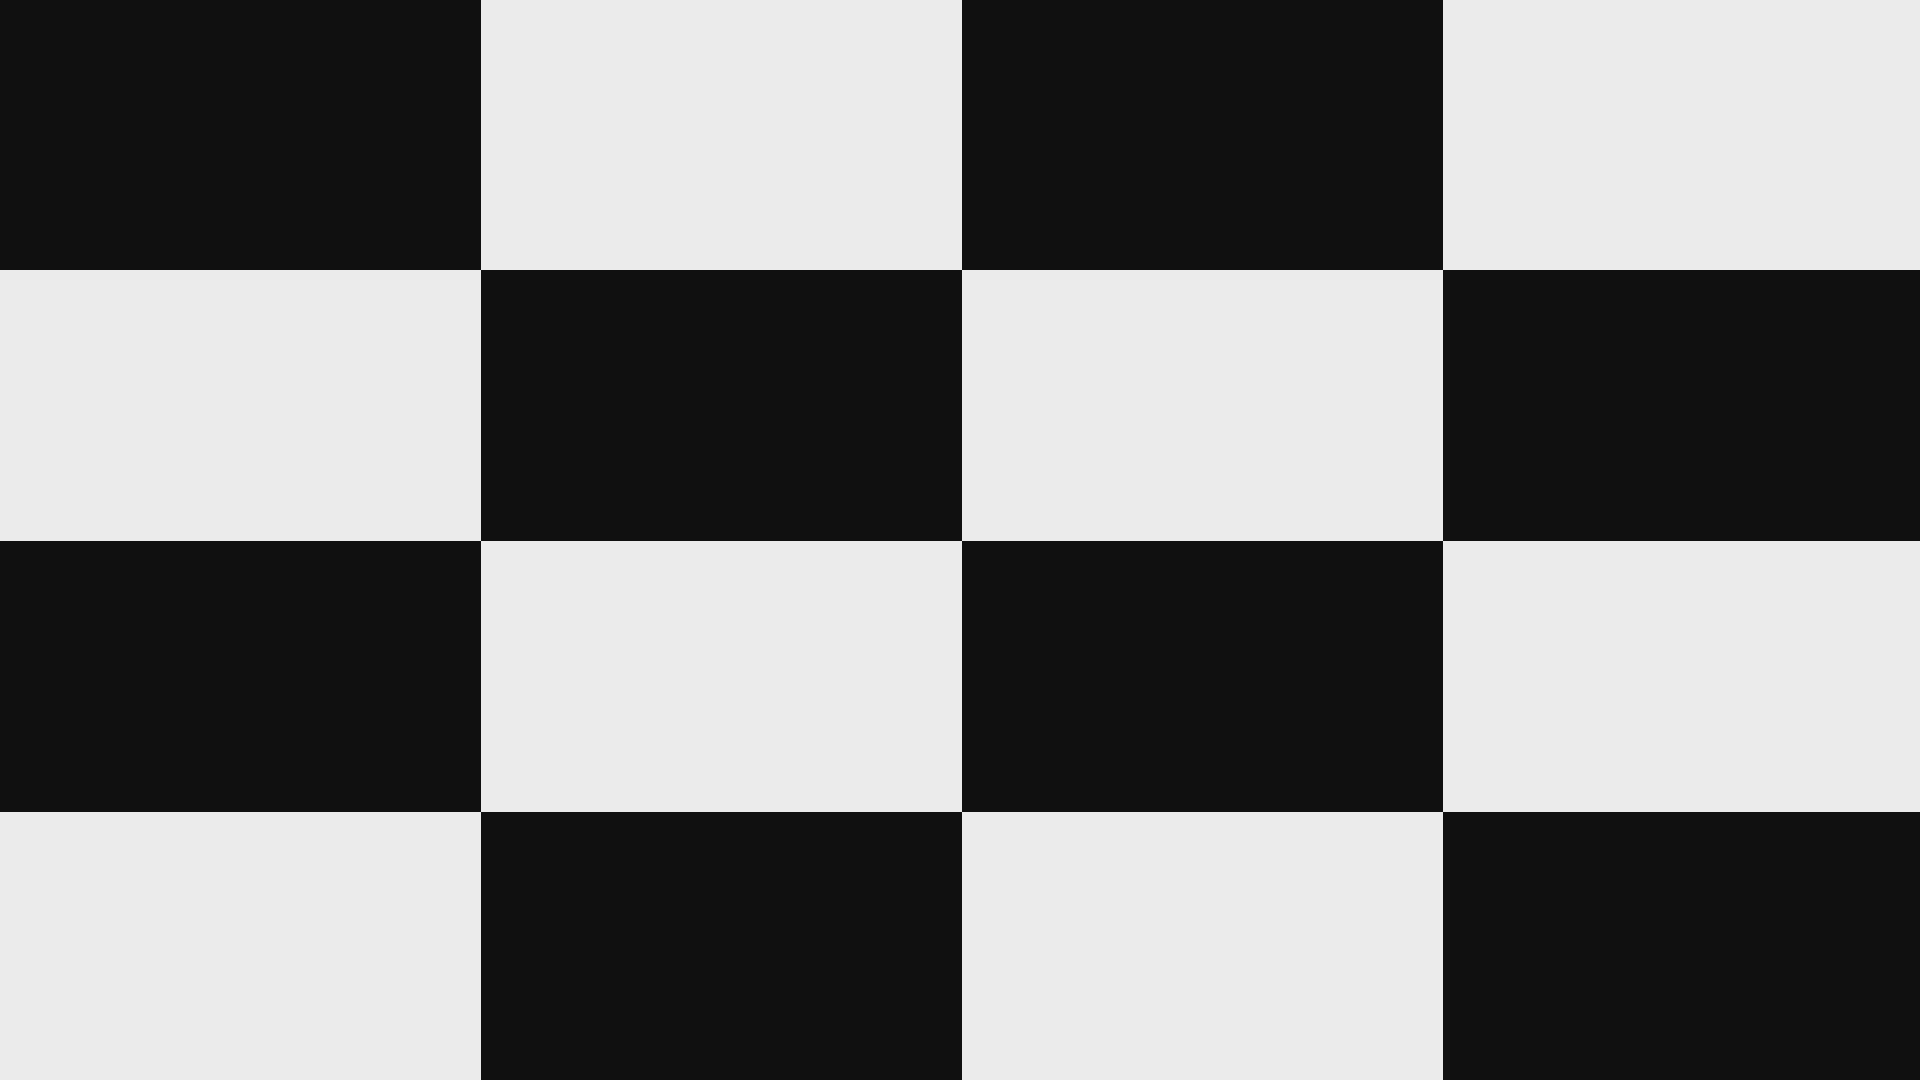 Шахматная доска на экране монитора. Шахматная доска для калибровки. Контраст изображения. Шахматная доска для калибровки камеры. Черно белые квадраты в шахматном порядке.